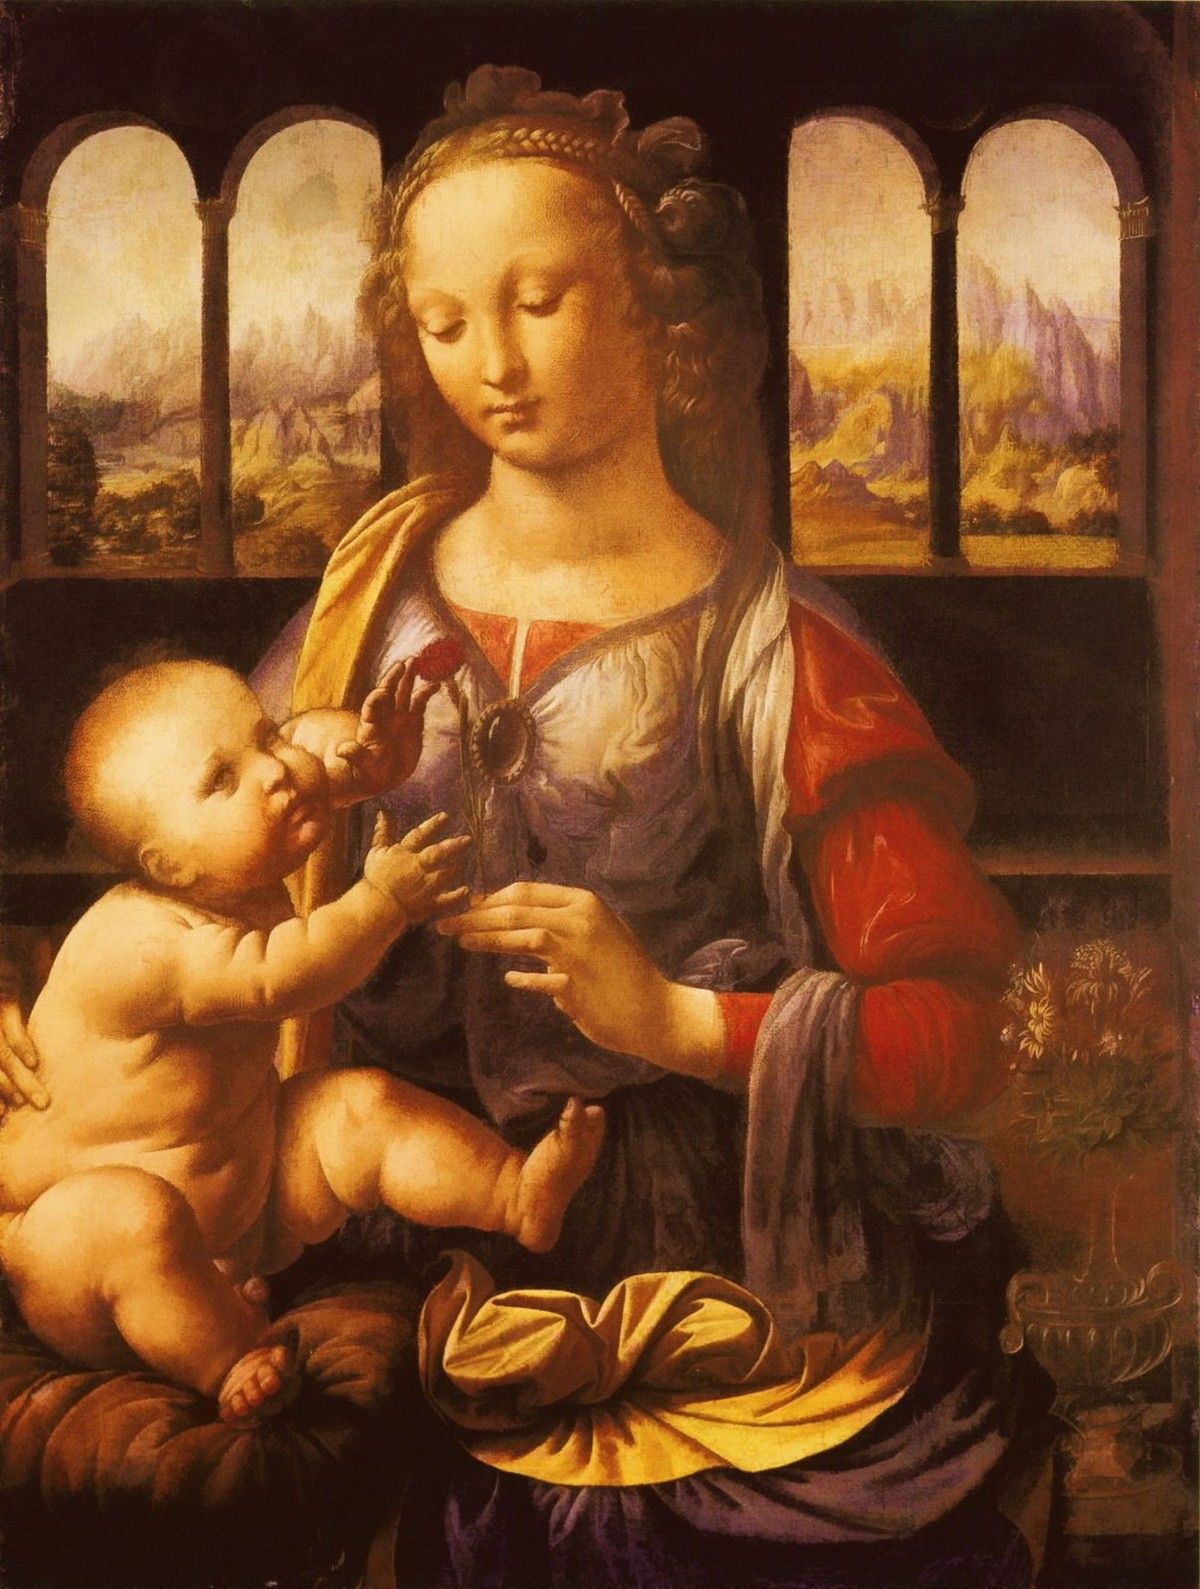 «Мадонна с гвоздикой» — картина, которую многие искусствоведы приписывают молодому Леонардо да Винчи. Предположительно, создана Леонардо в бытность его учеником в мастерской Верроккьо. И действительно, существуют параллели с работами учителя, однако в композиции и стиле уже чувствуется рука гения...